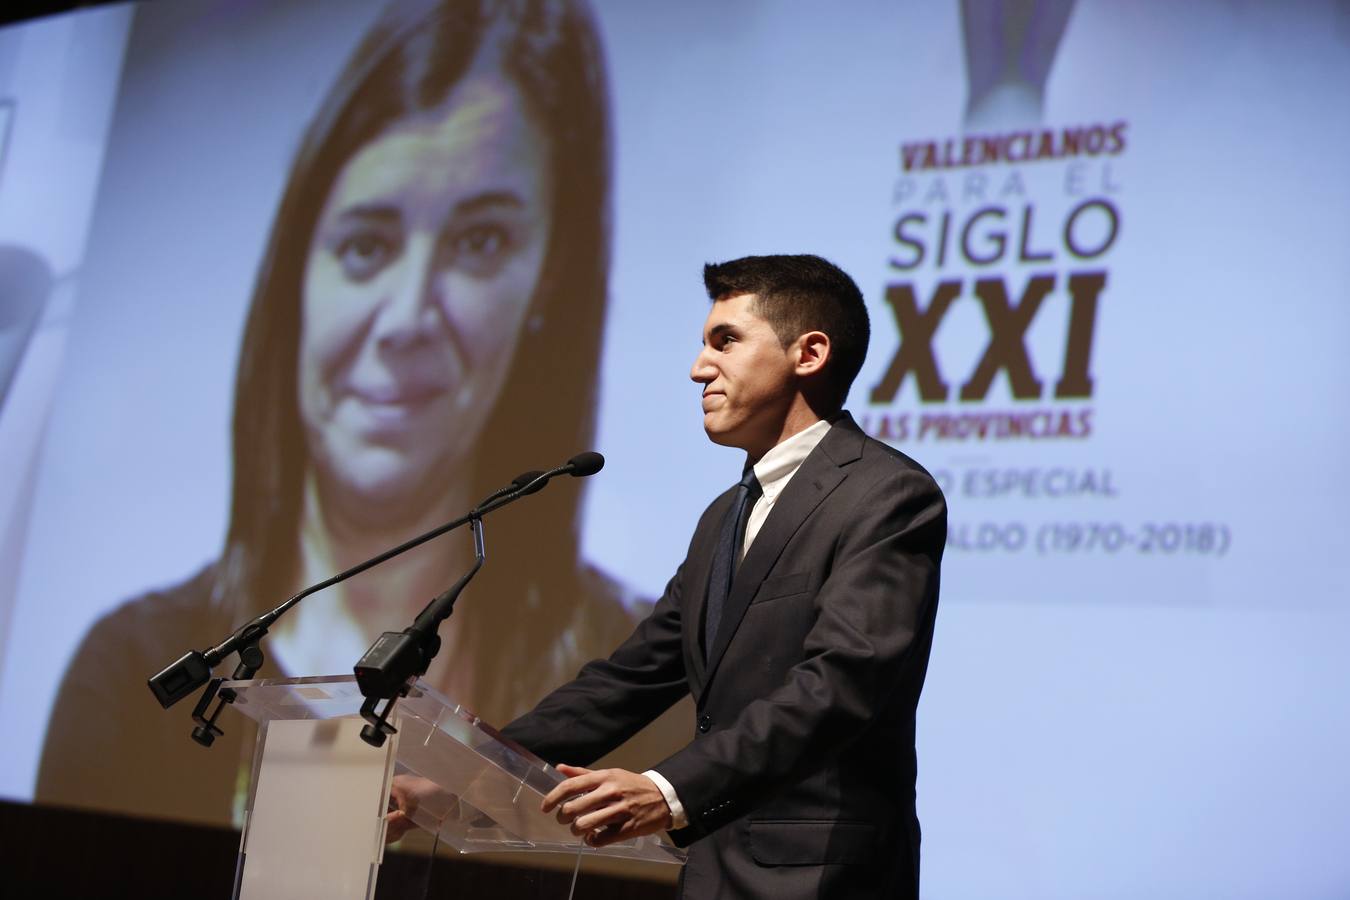 Pepe Morató, hijo de Majo Grimaldo, tras el premio especial a la subdirectora del periódico, fallecida el 1 de noviembre.